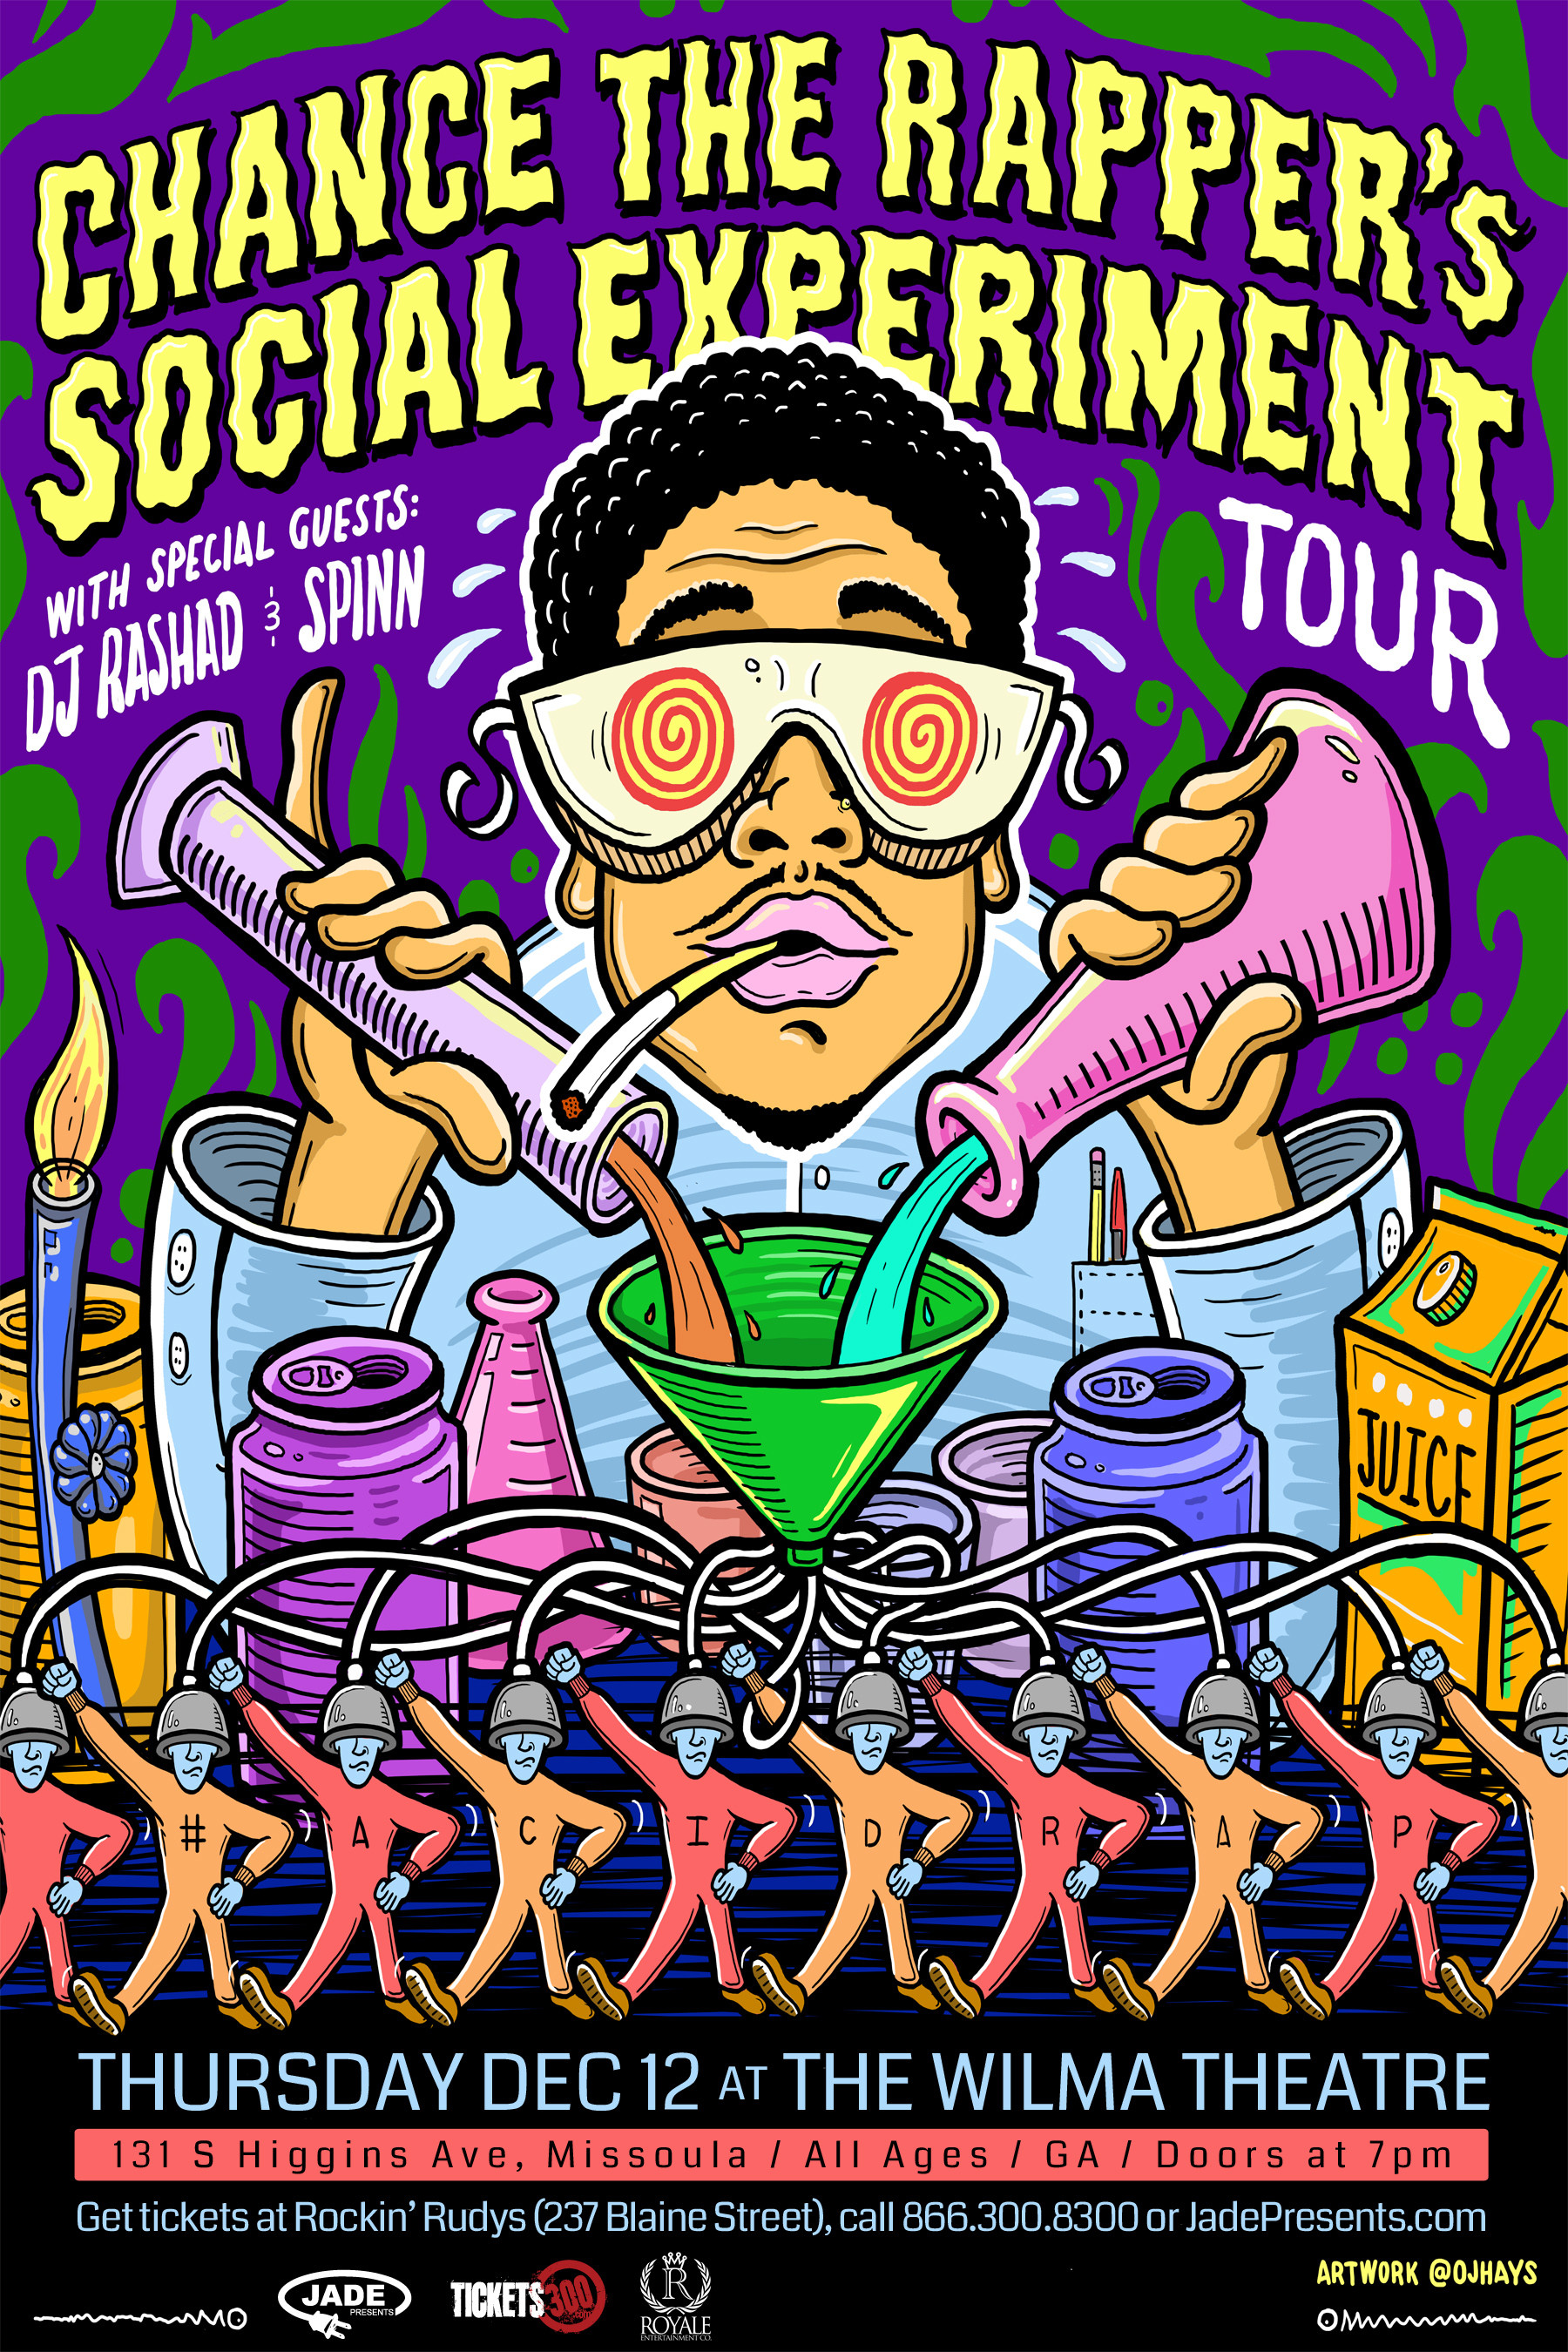 Chance The Rapper Announces The Social Experiment Tour - Chance The Rapper Concert Posters - HD Wallpaper 